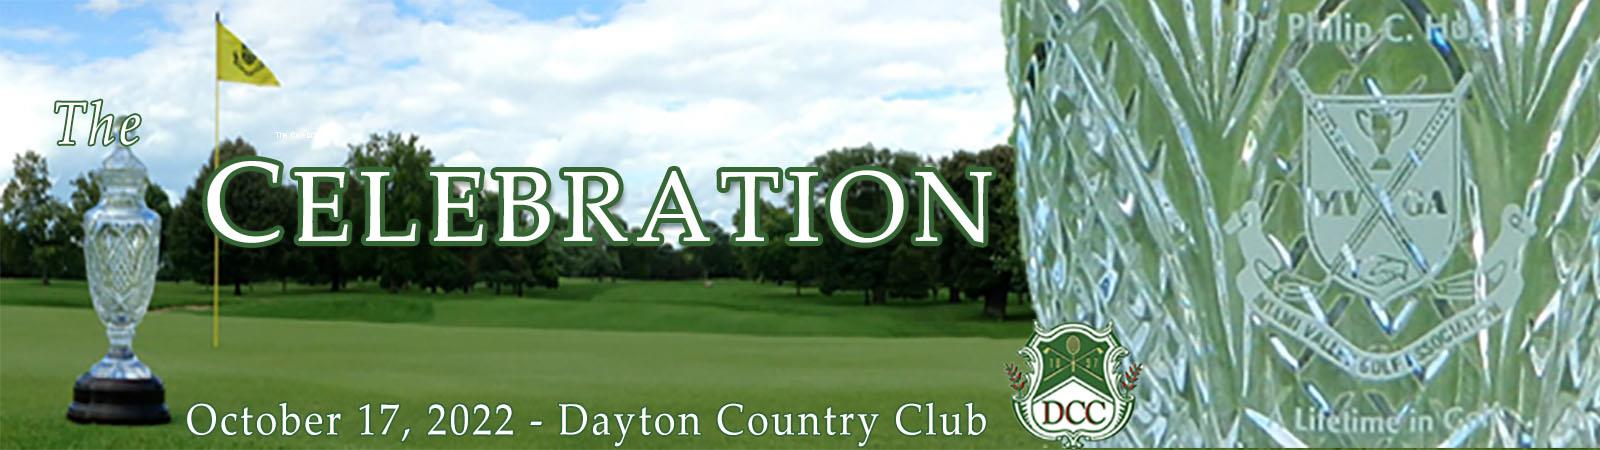 2022-10-17-Celebration-Dayton3